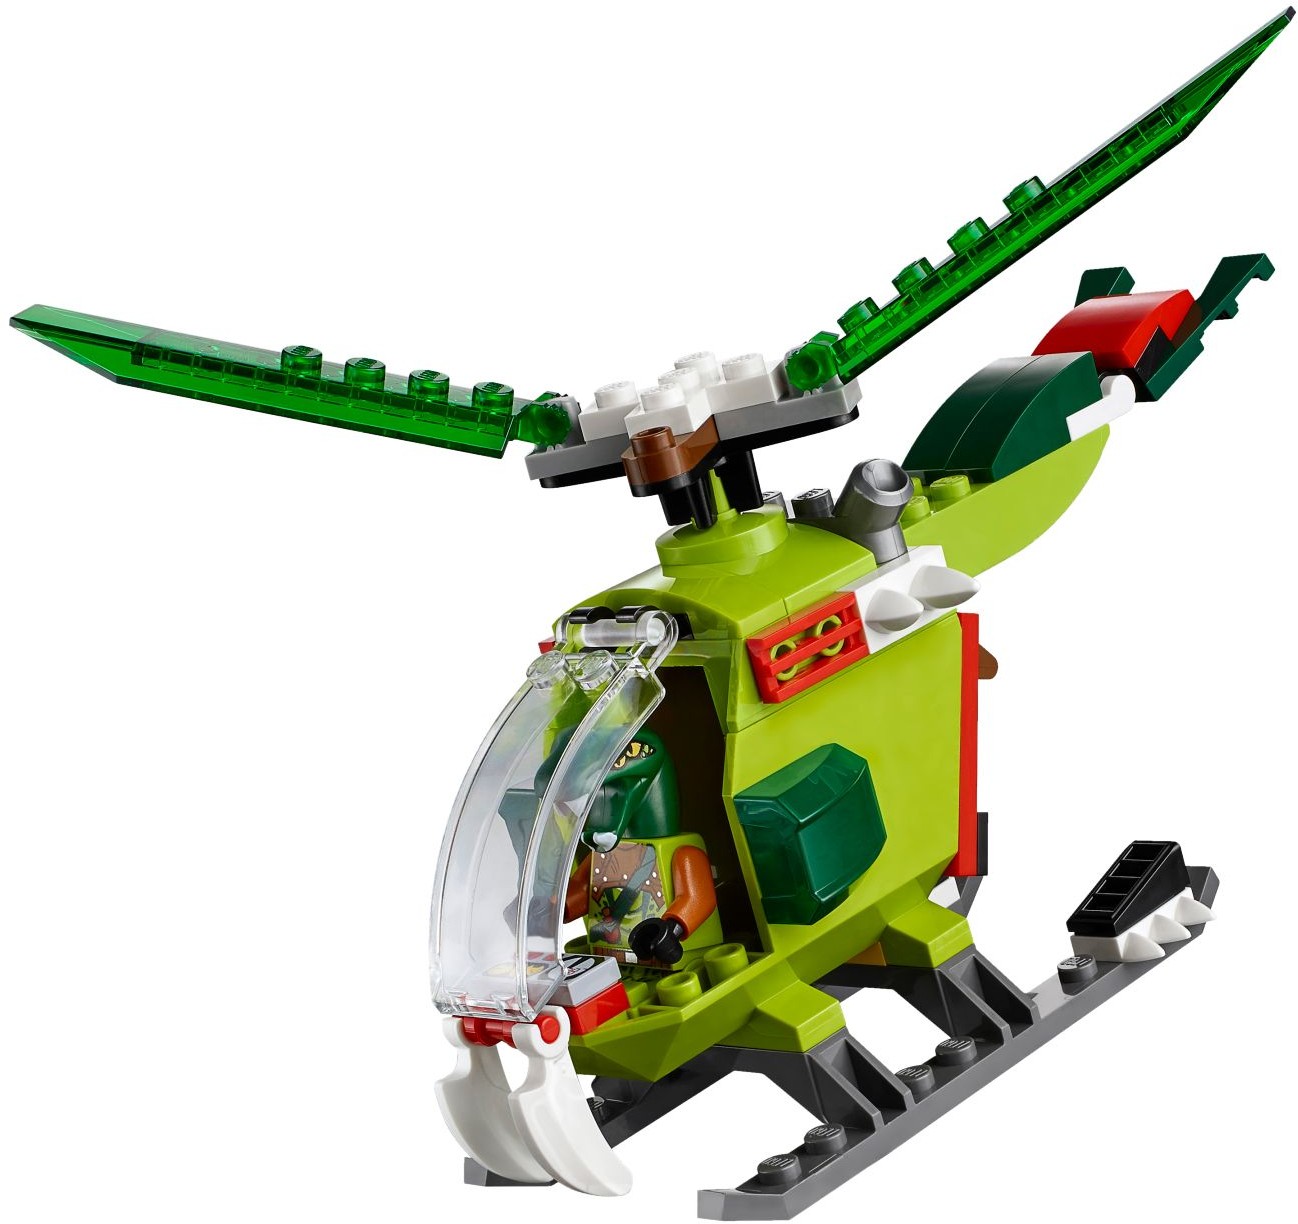 Lego Juniors. Лего Джуниорс. Затерянный храм  